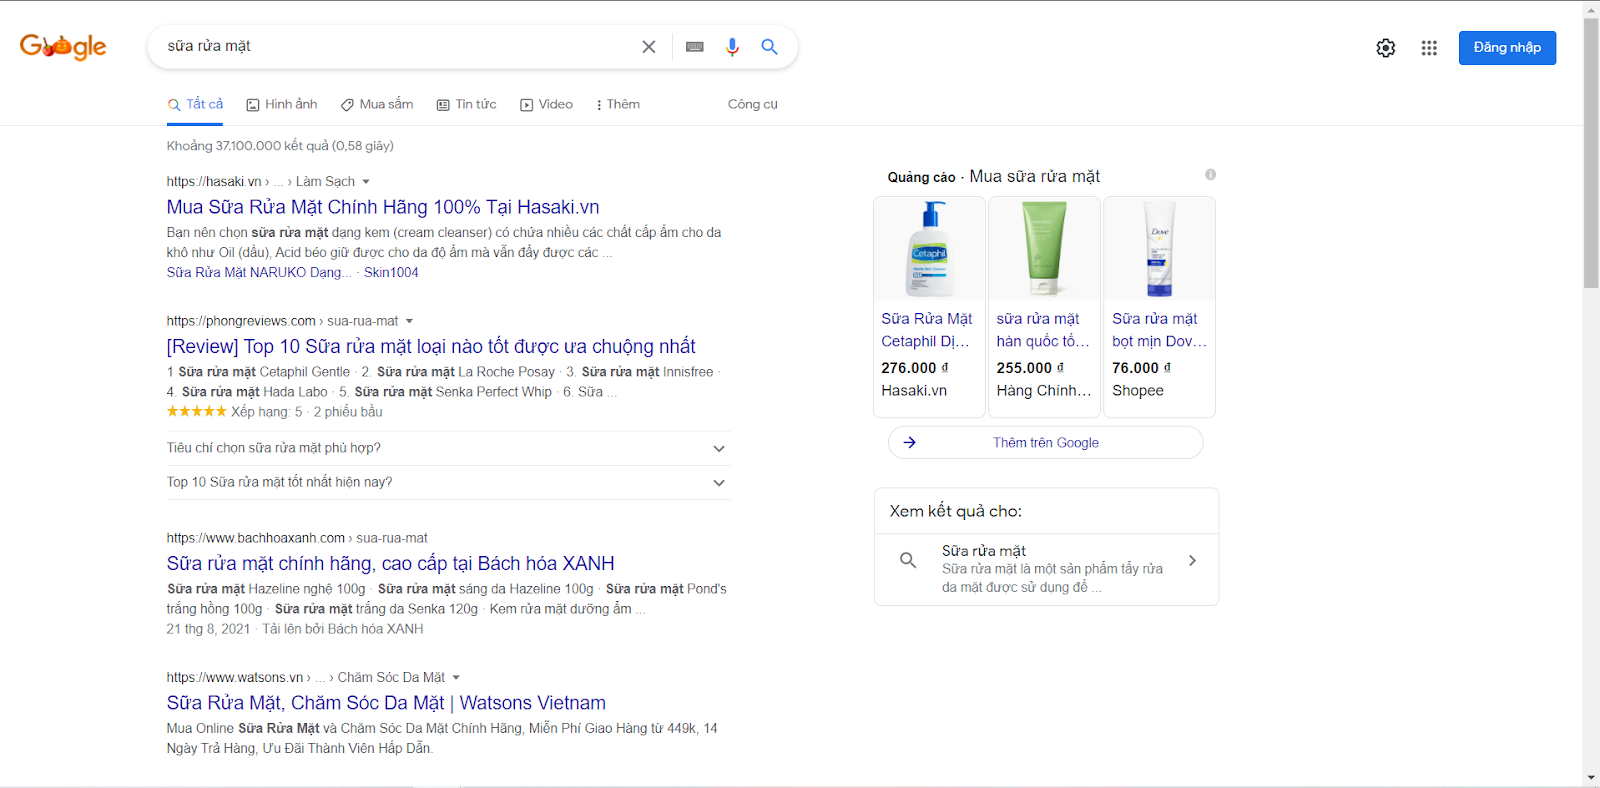 Kết quả tìm kiếm từ khóa sữa rửa mặt trên Google Search